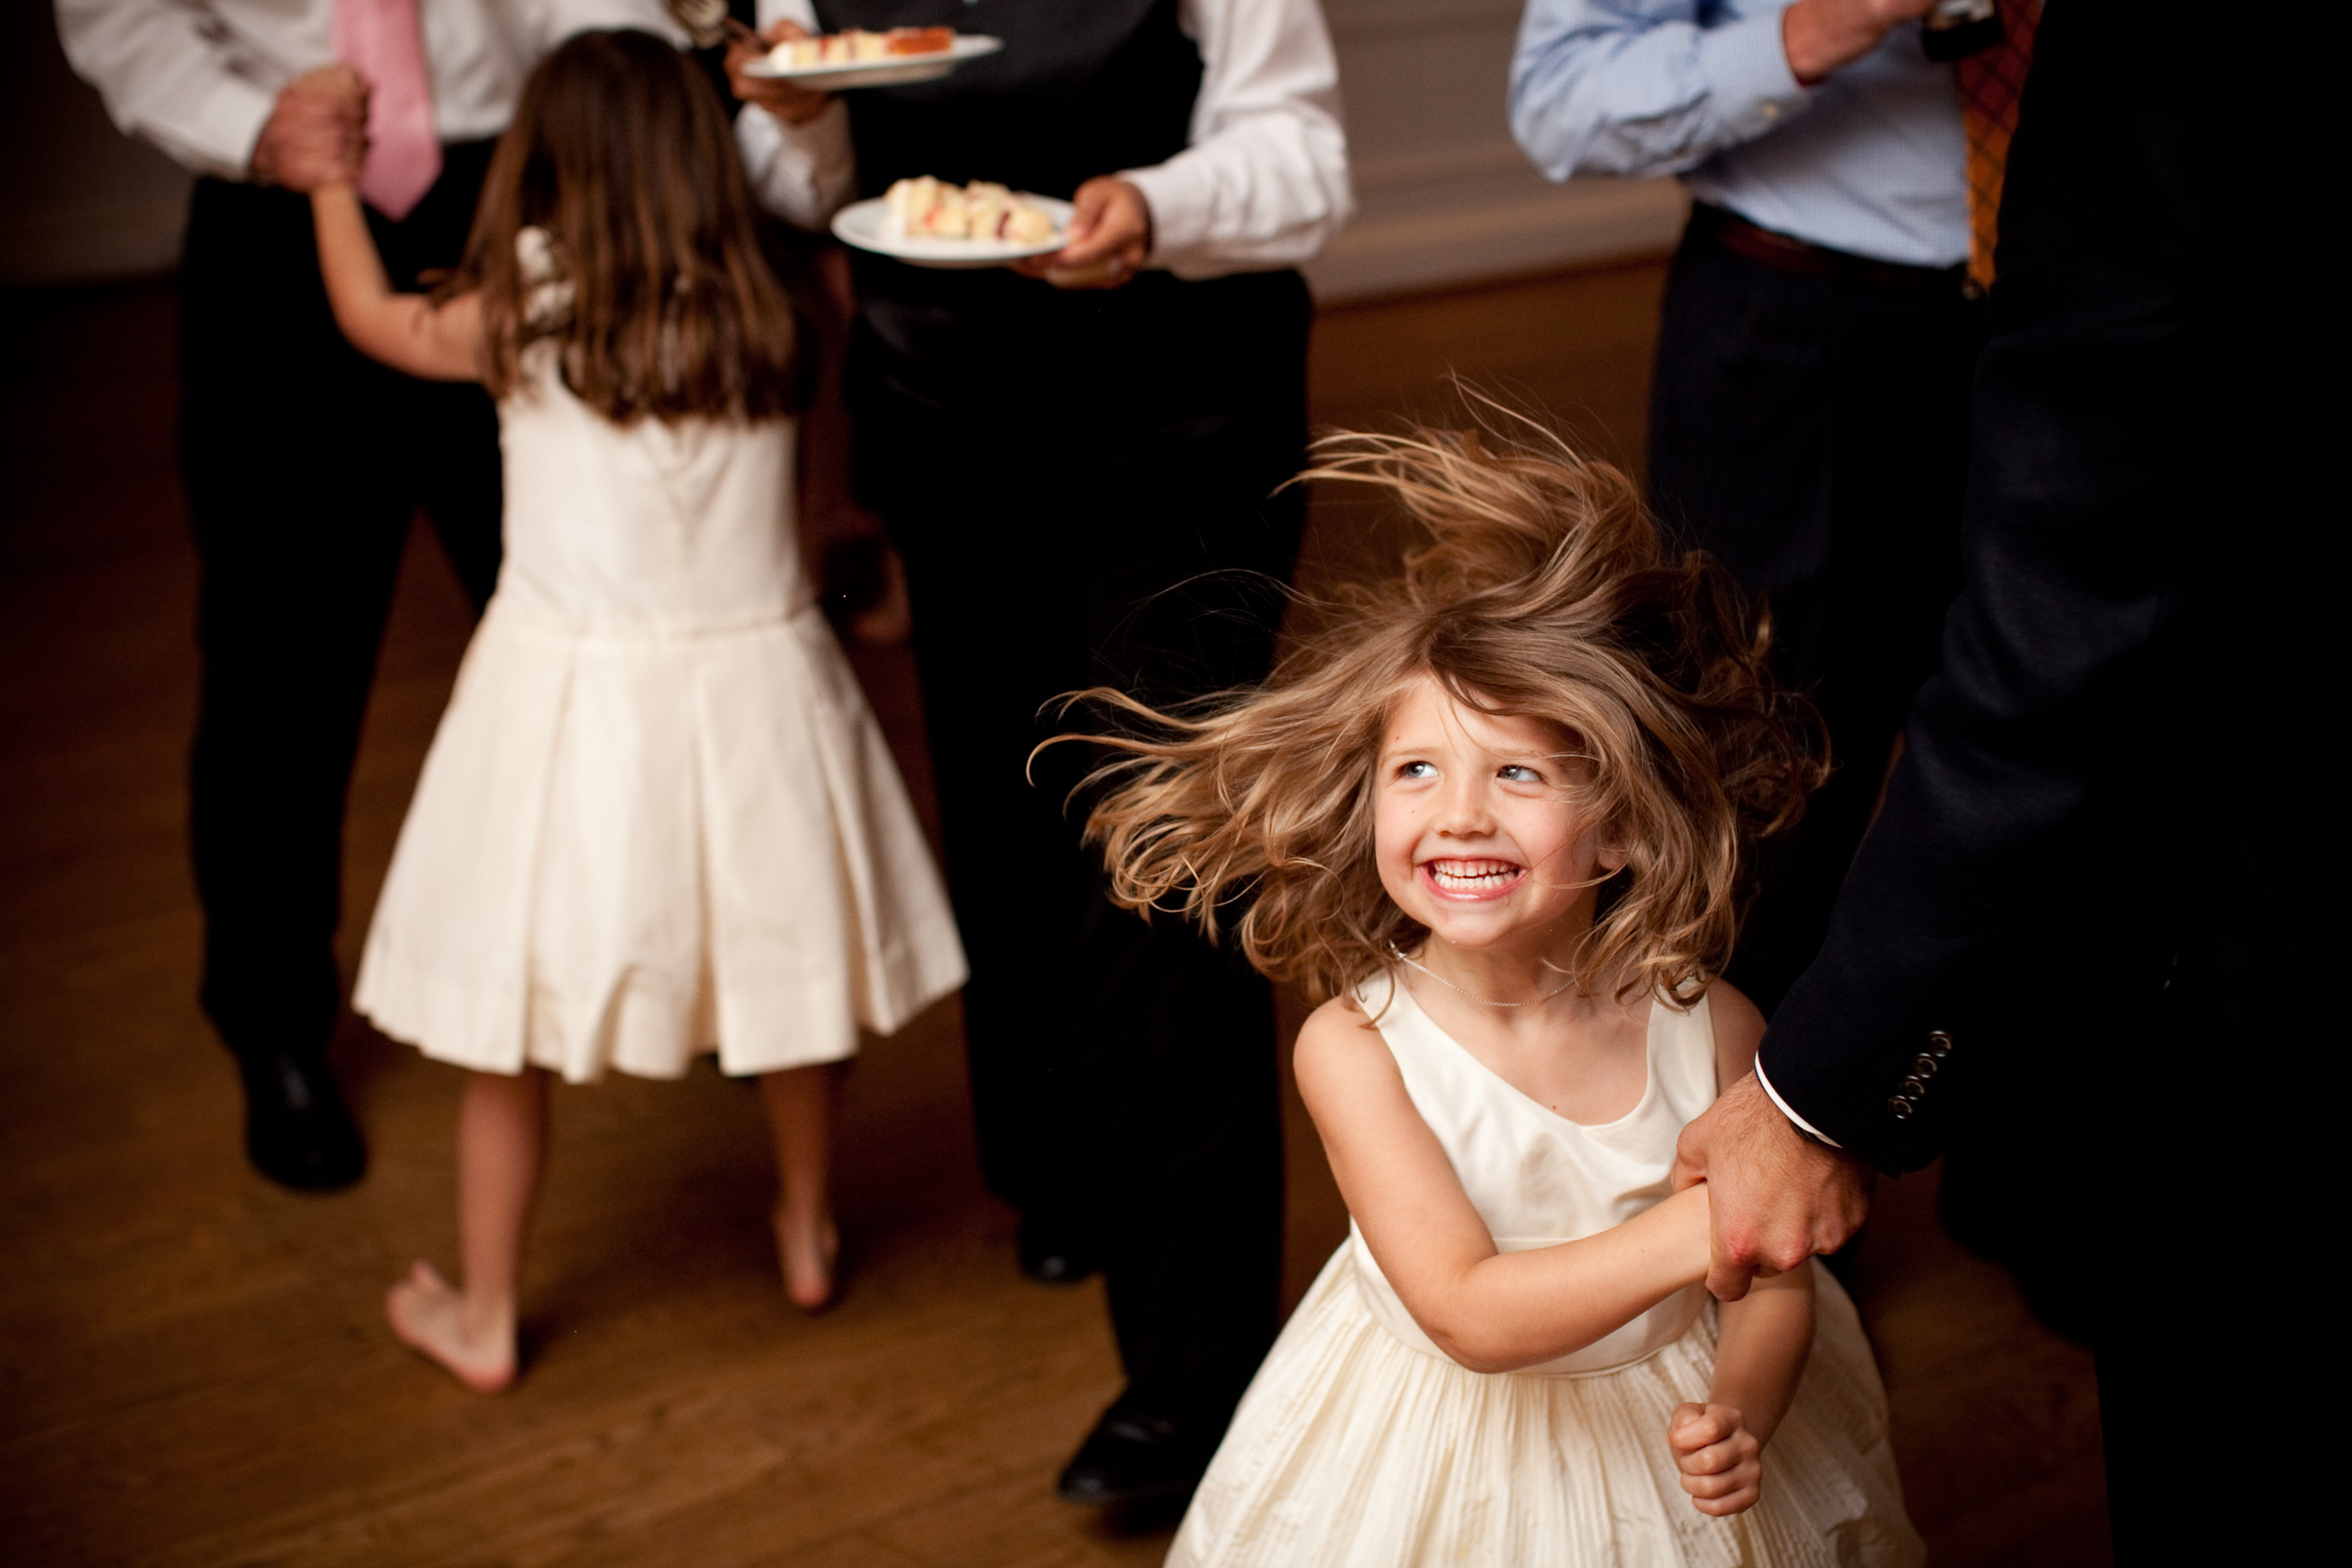 daughter dances, hair swinging